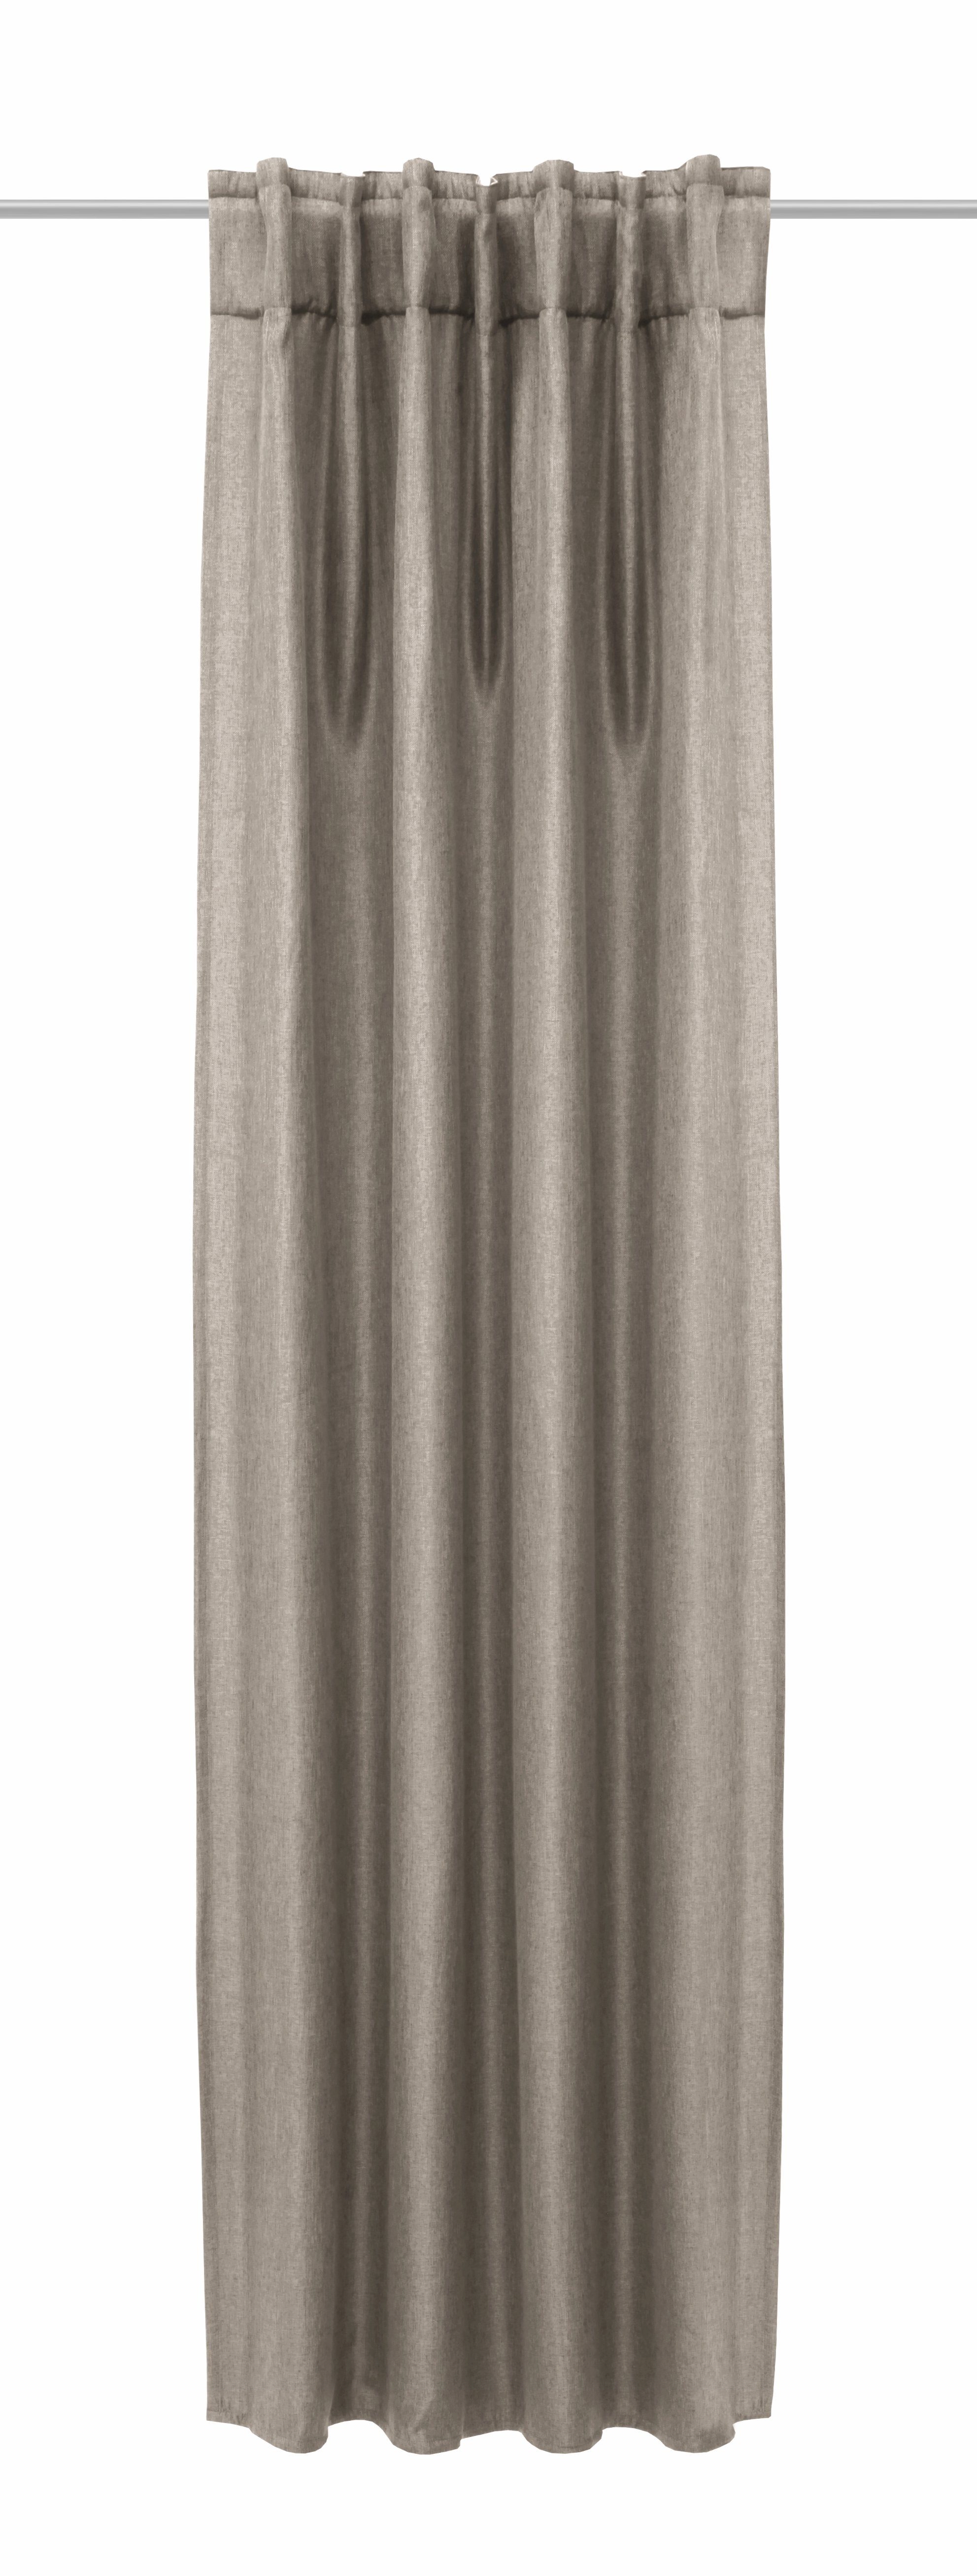 Clever-Kauf-24, verdunkelnder Leinenoptik, Vorhang Jolie Verdunkelungsvorhang Verdunkelungsvorhang